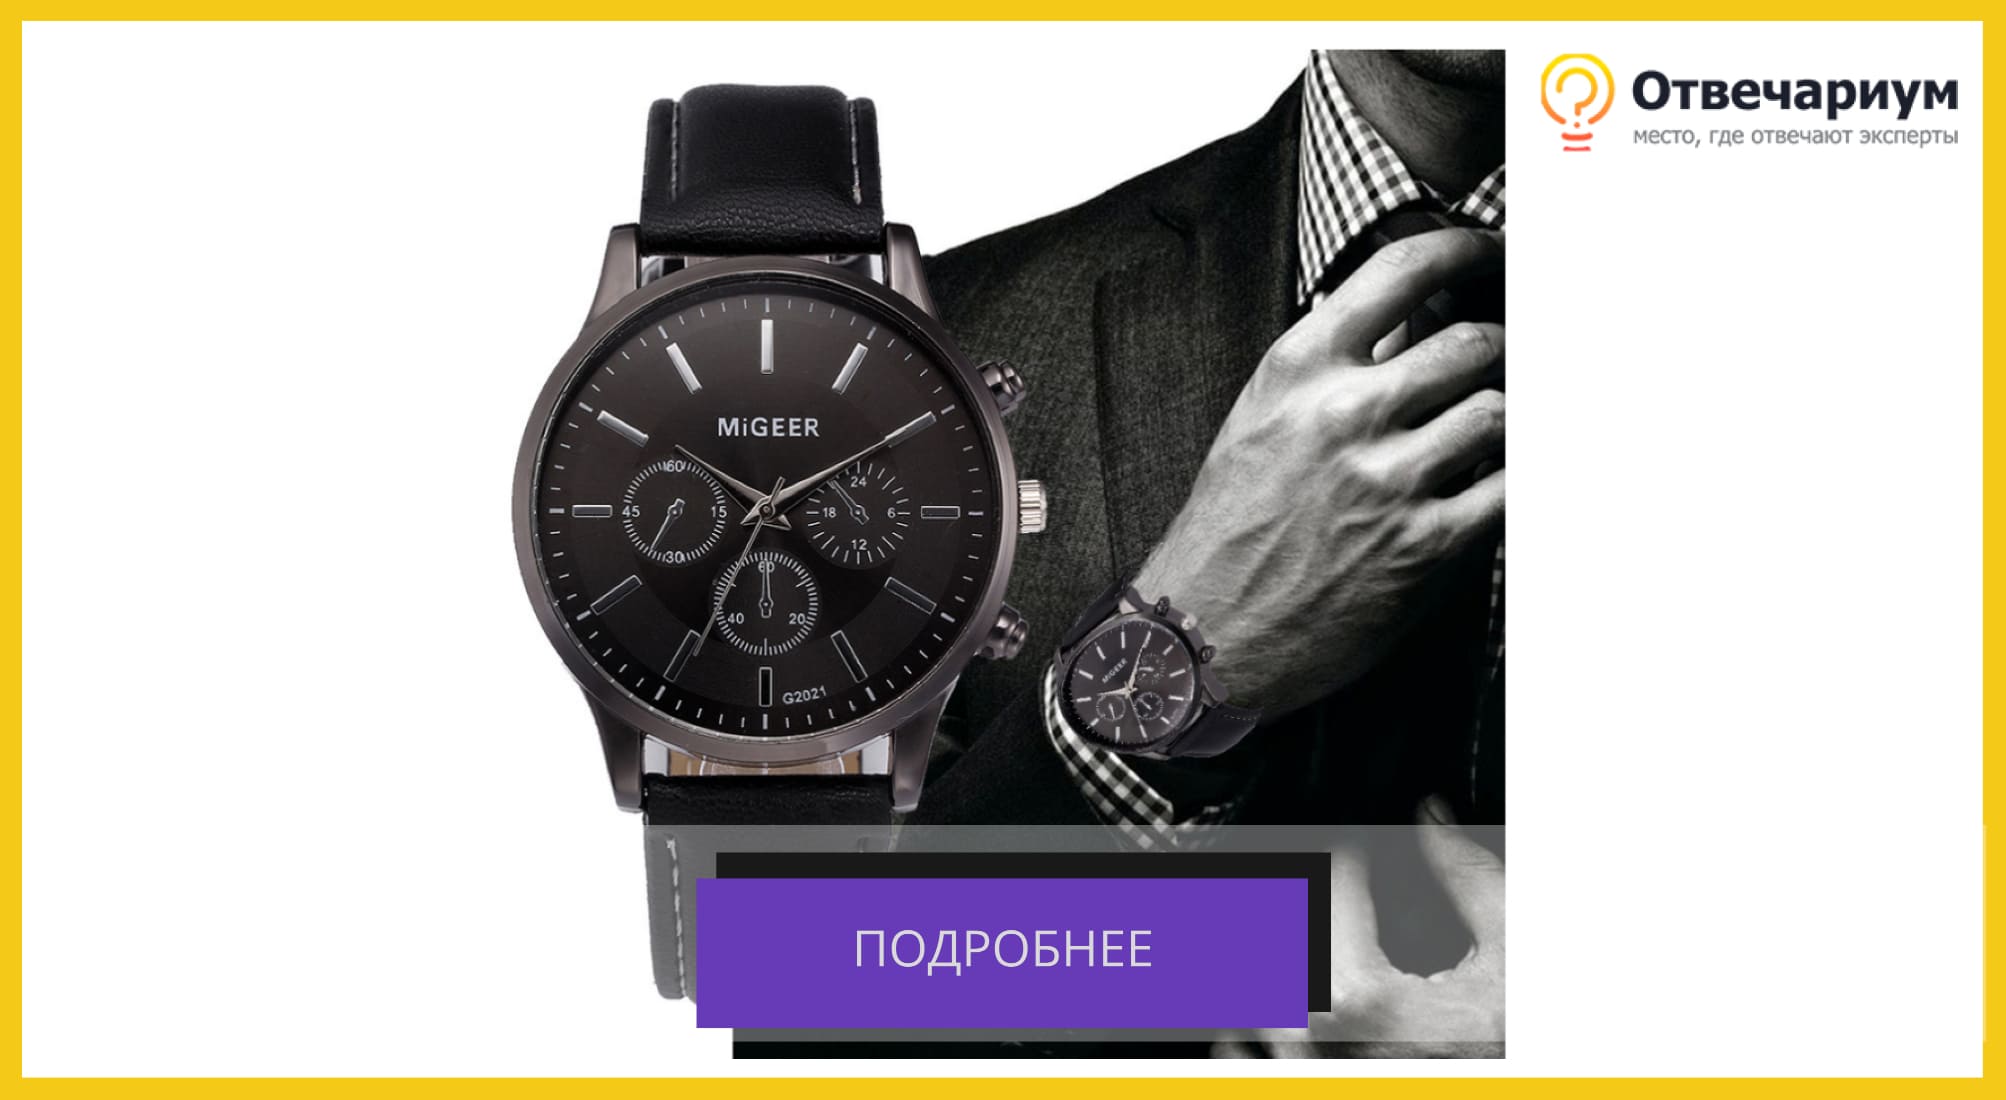 Классические мужские часы с черным ремешком. Отдельно показано как они смотрятся на мужчине в клетчатой рубашке и пиджаке.